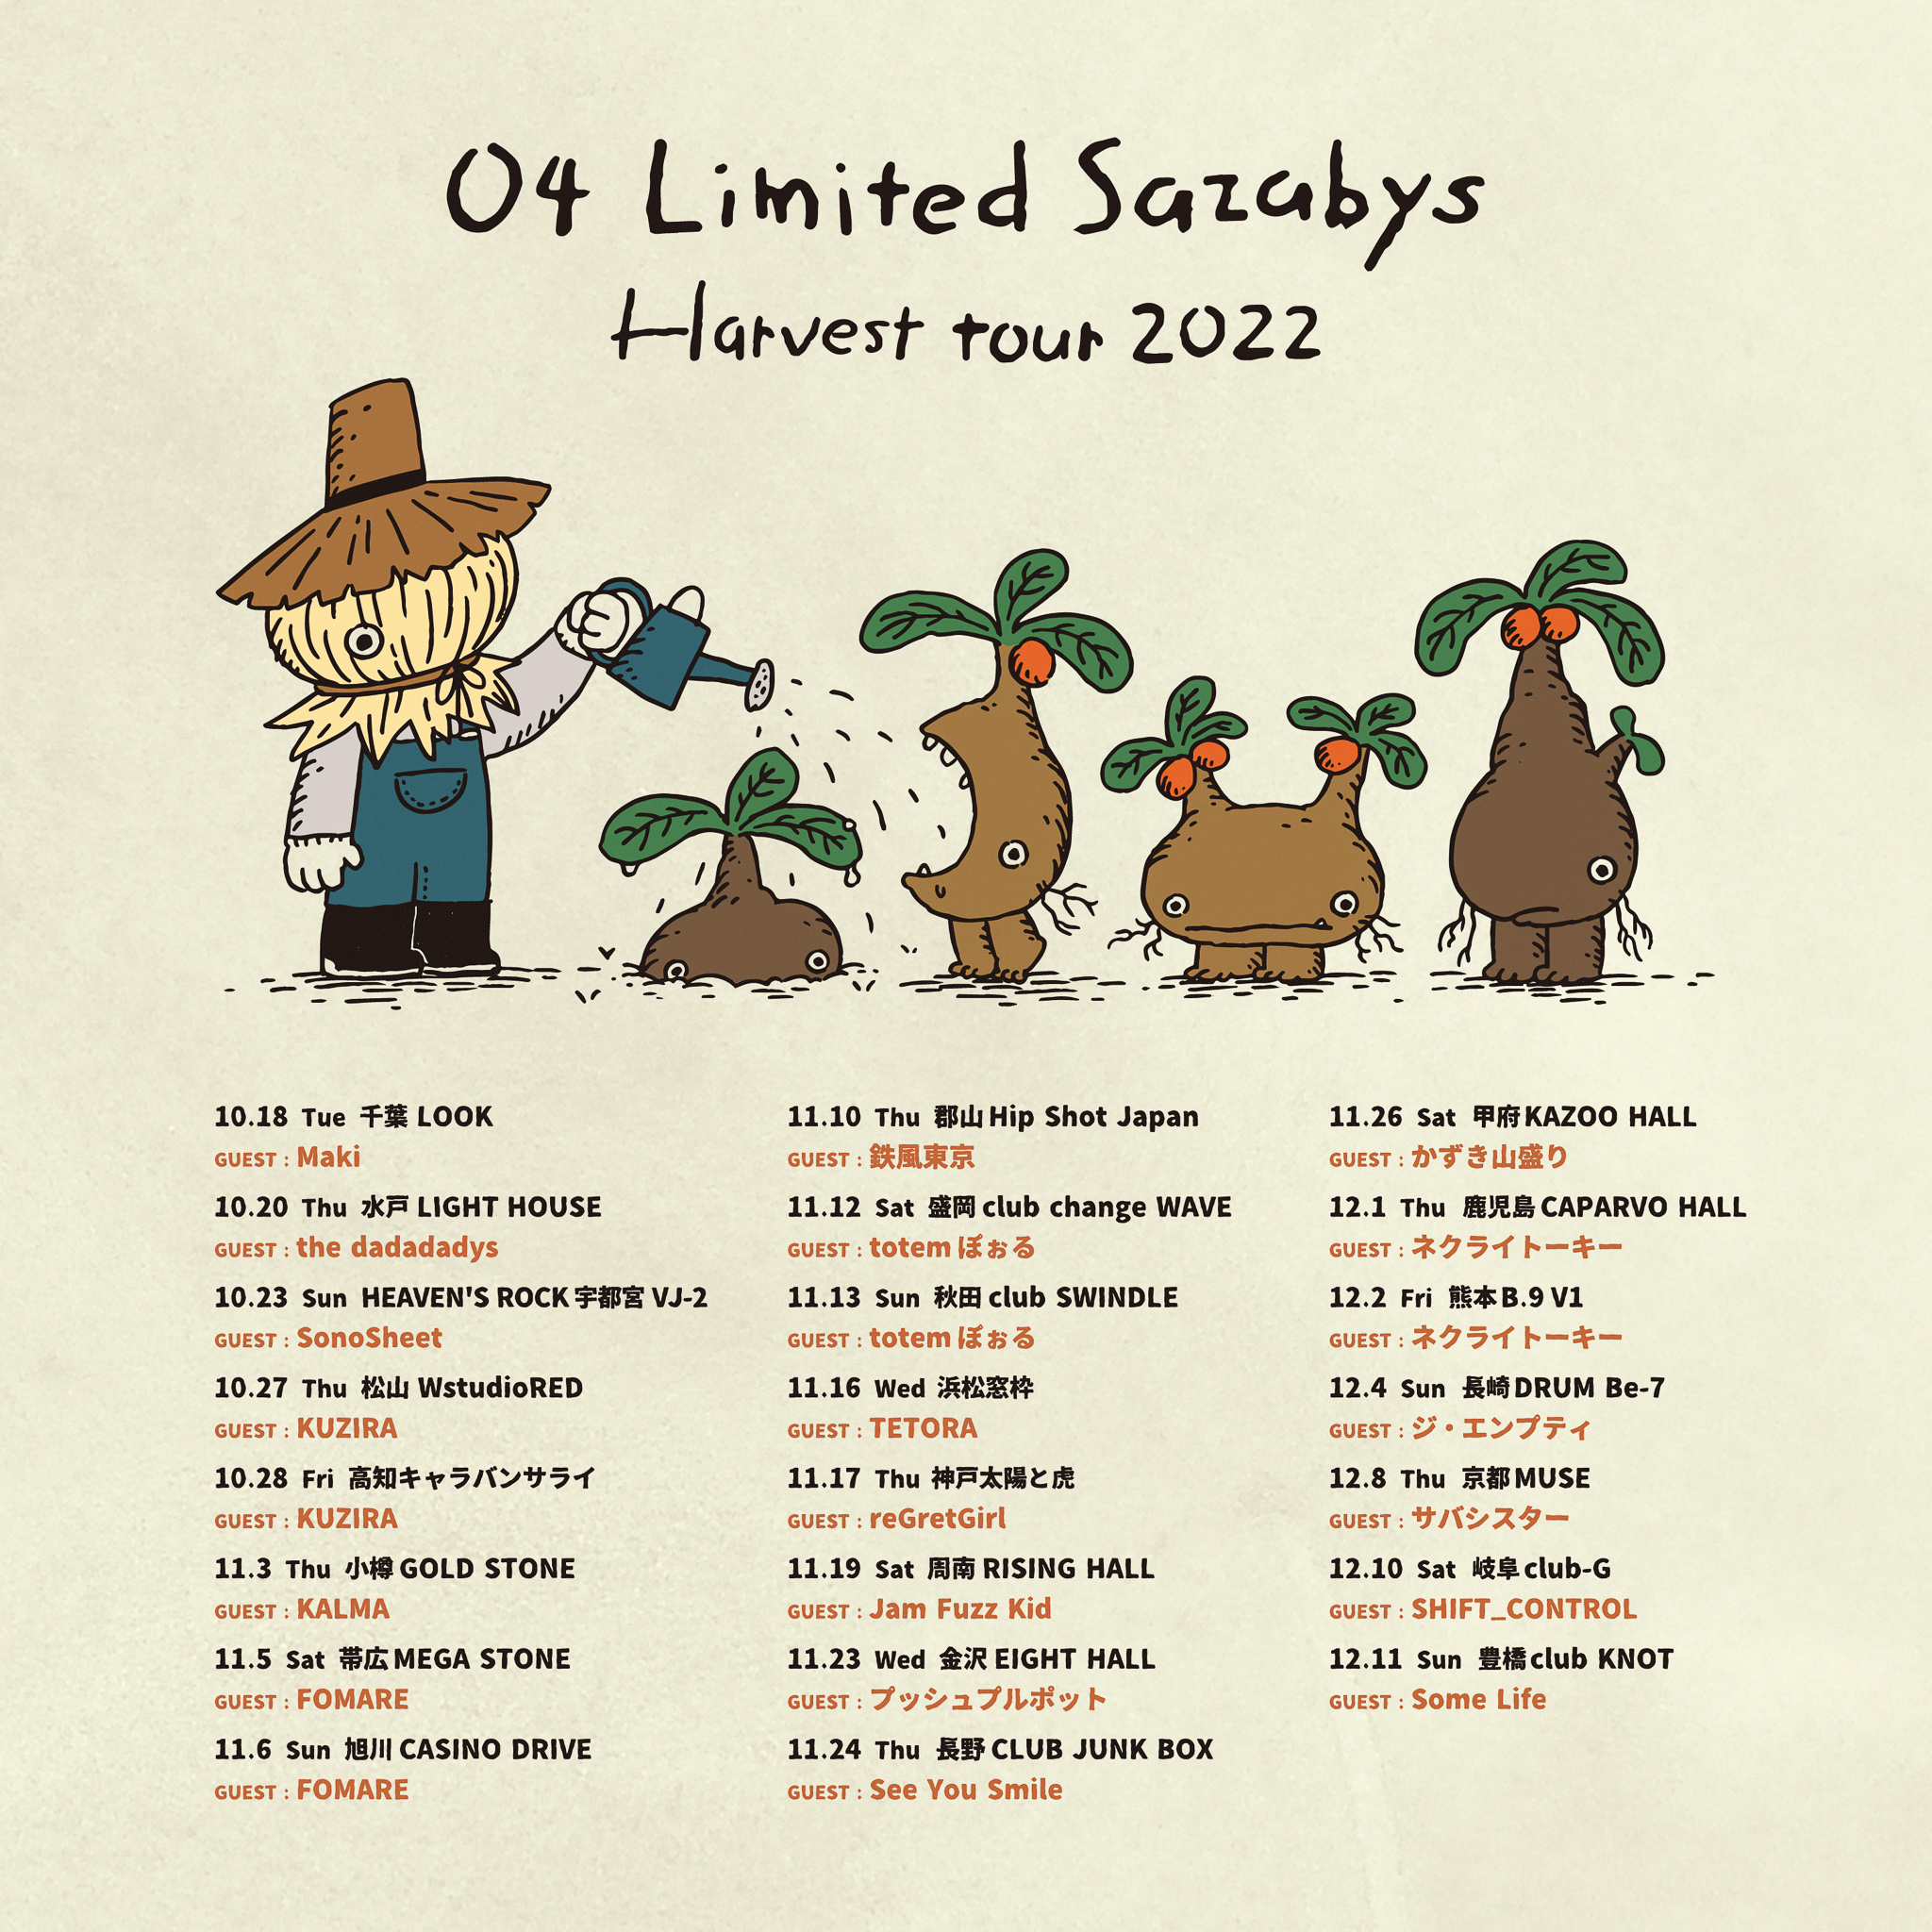 【京都】04 Limited Sazabys "Harvest tour 2022" (京都MUSE)